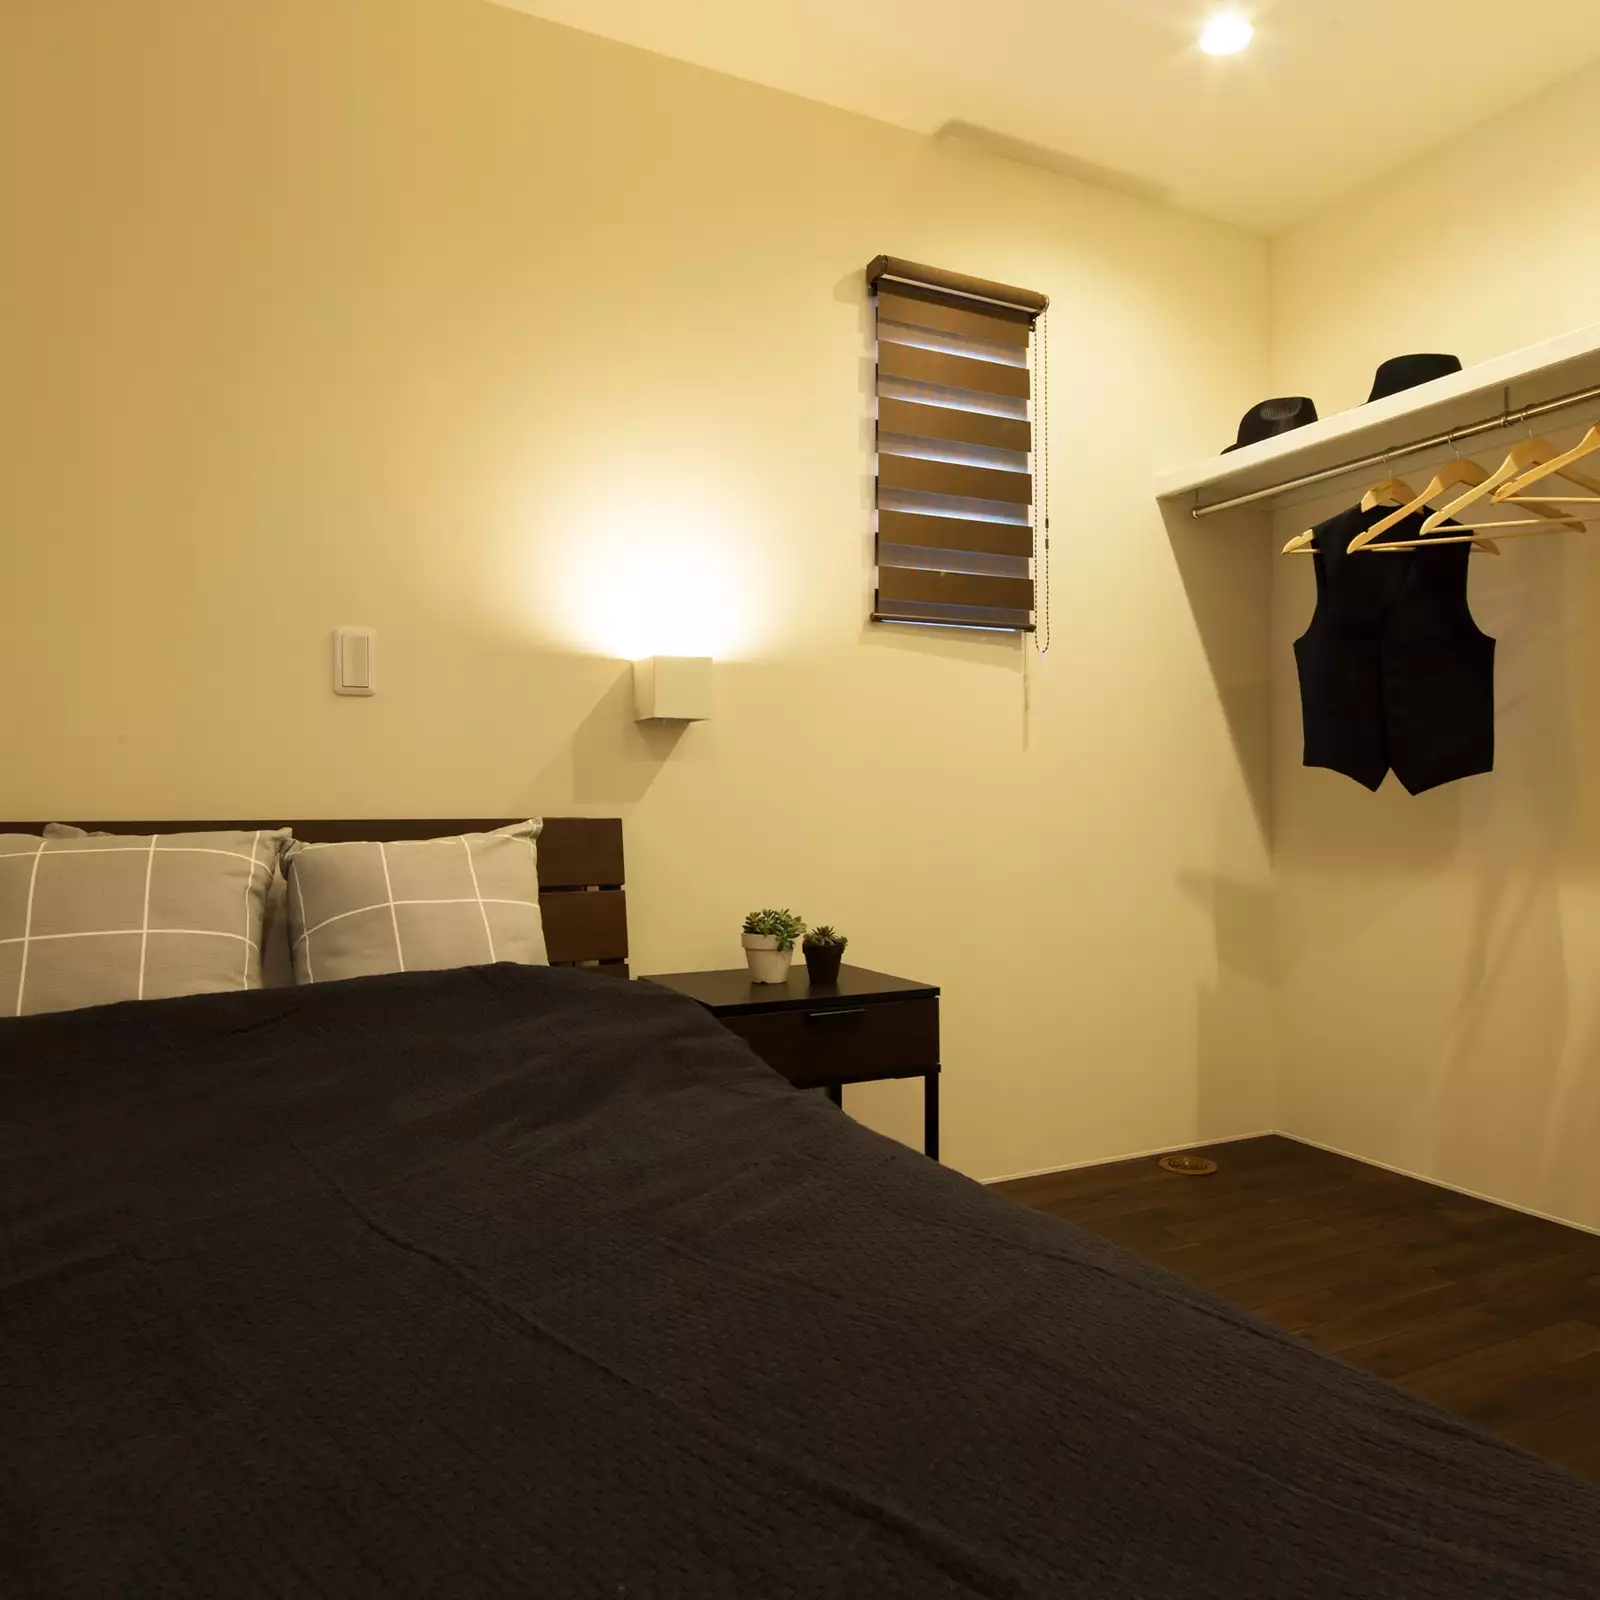 R+houseの物件の寝室の写真です。ベッドとオープンタイプのクローゼットしかないシンプルなお部屋。